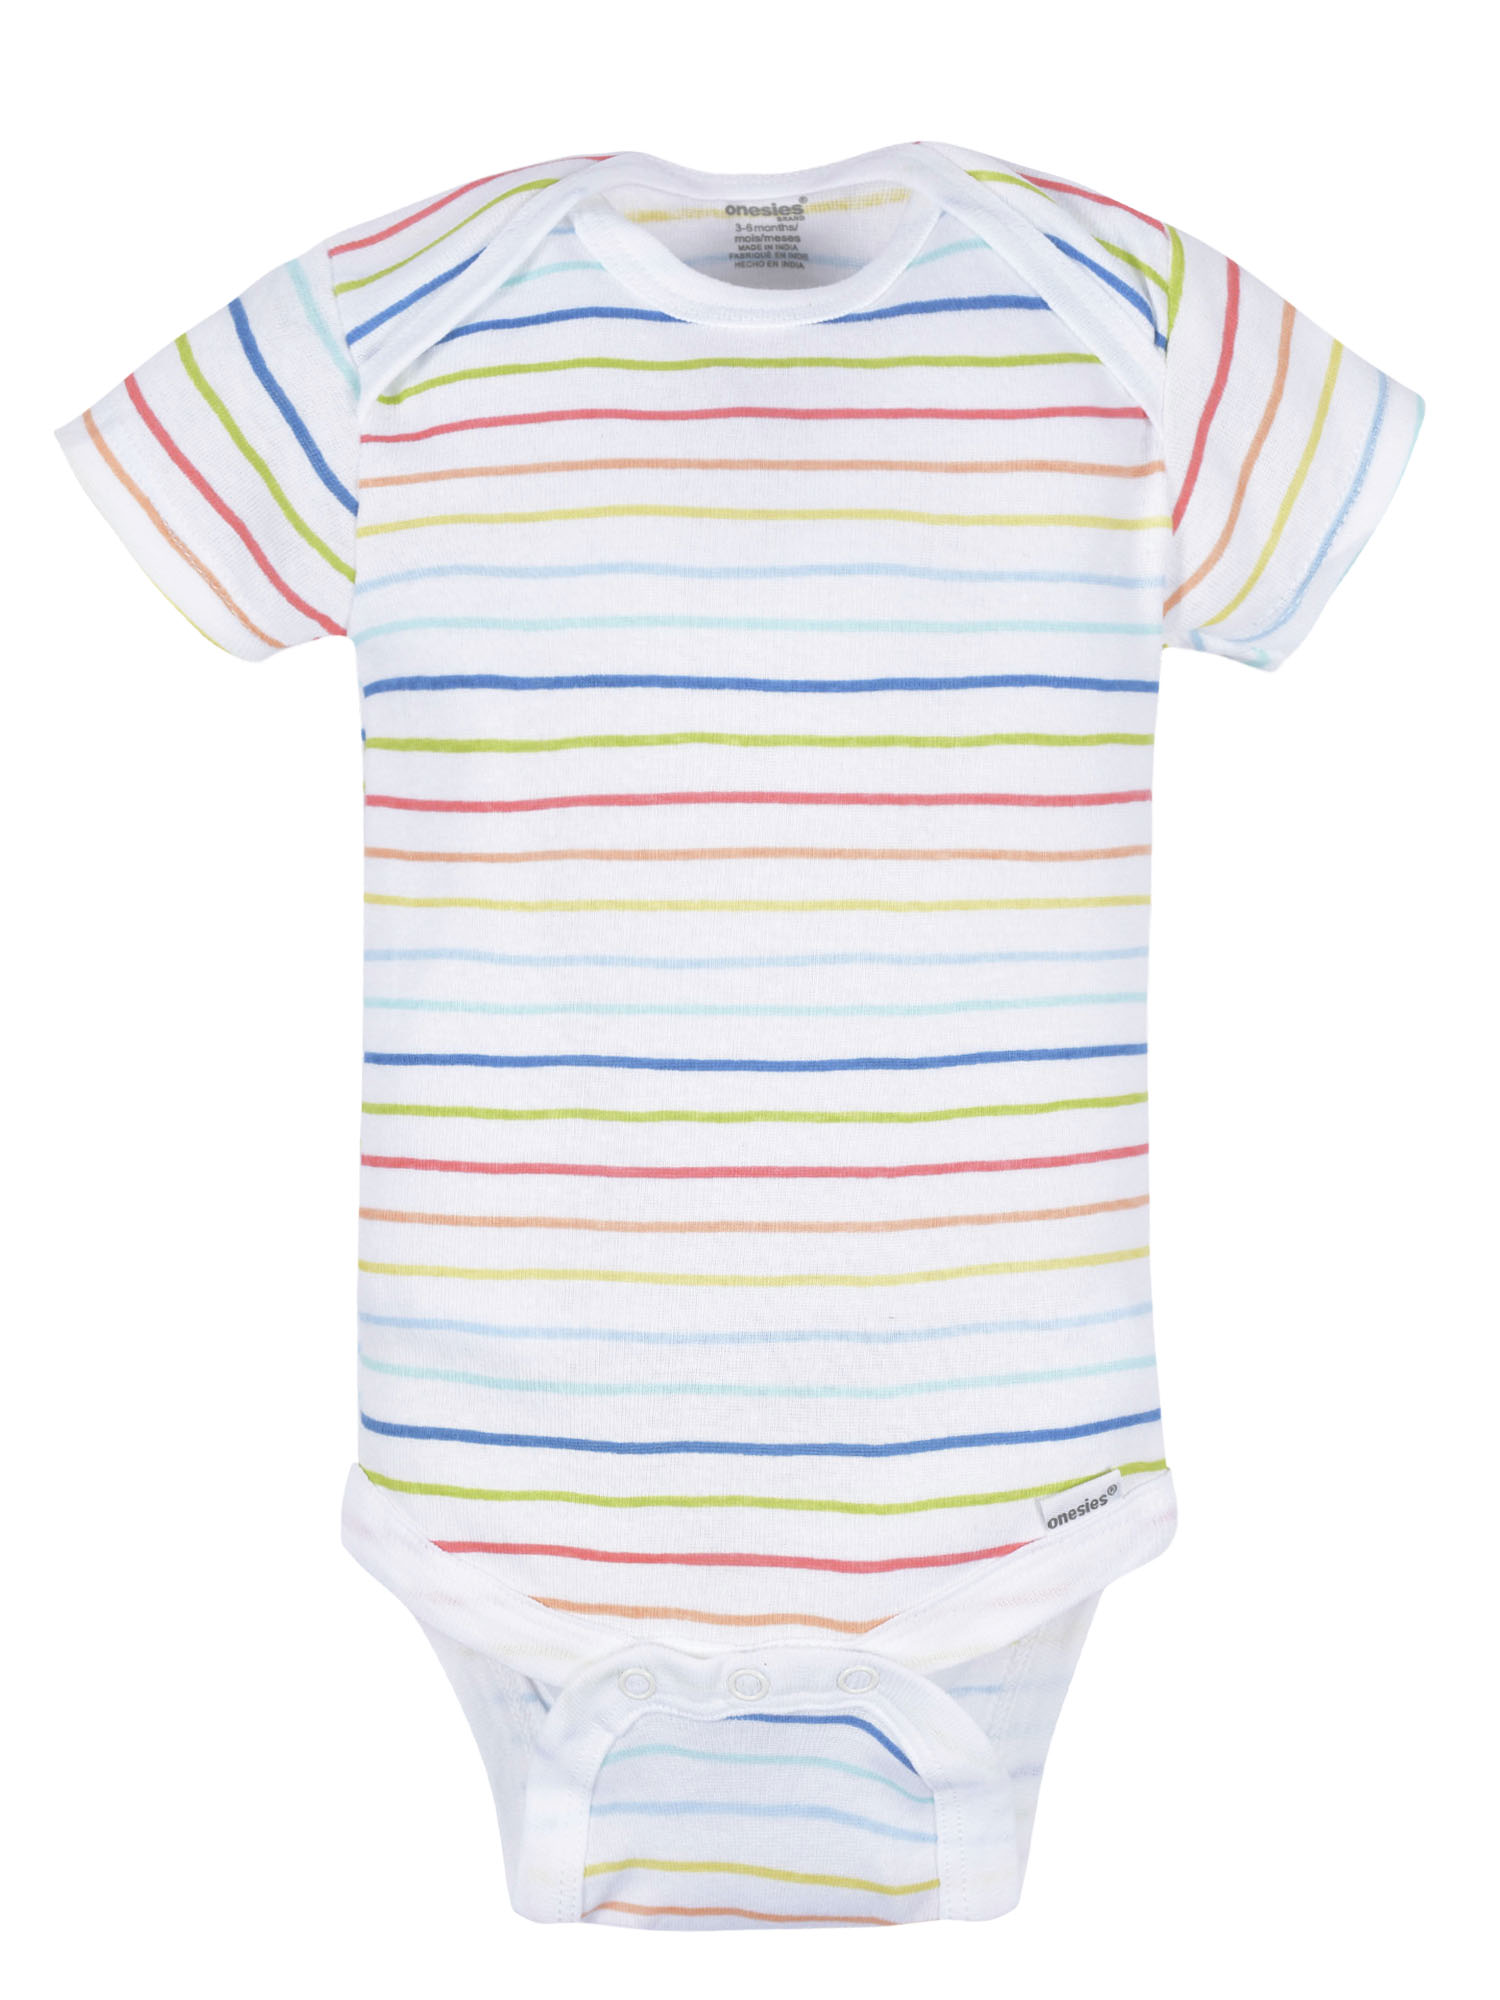 Onesies Brand Baby Boy or Girl Gender Neutral Short Sleeve Onesies Bodysuits, 8-Pack, Sizes Newborn-12M - image 5 of 17